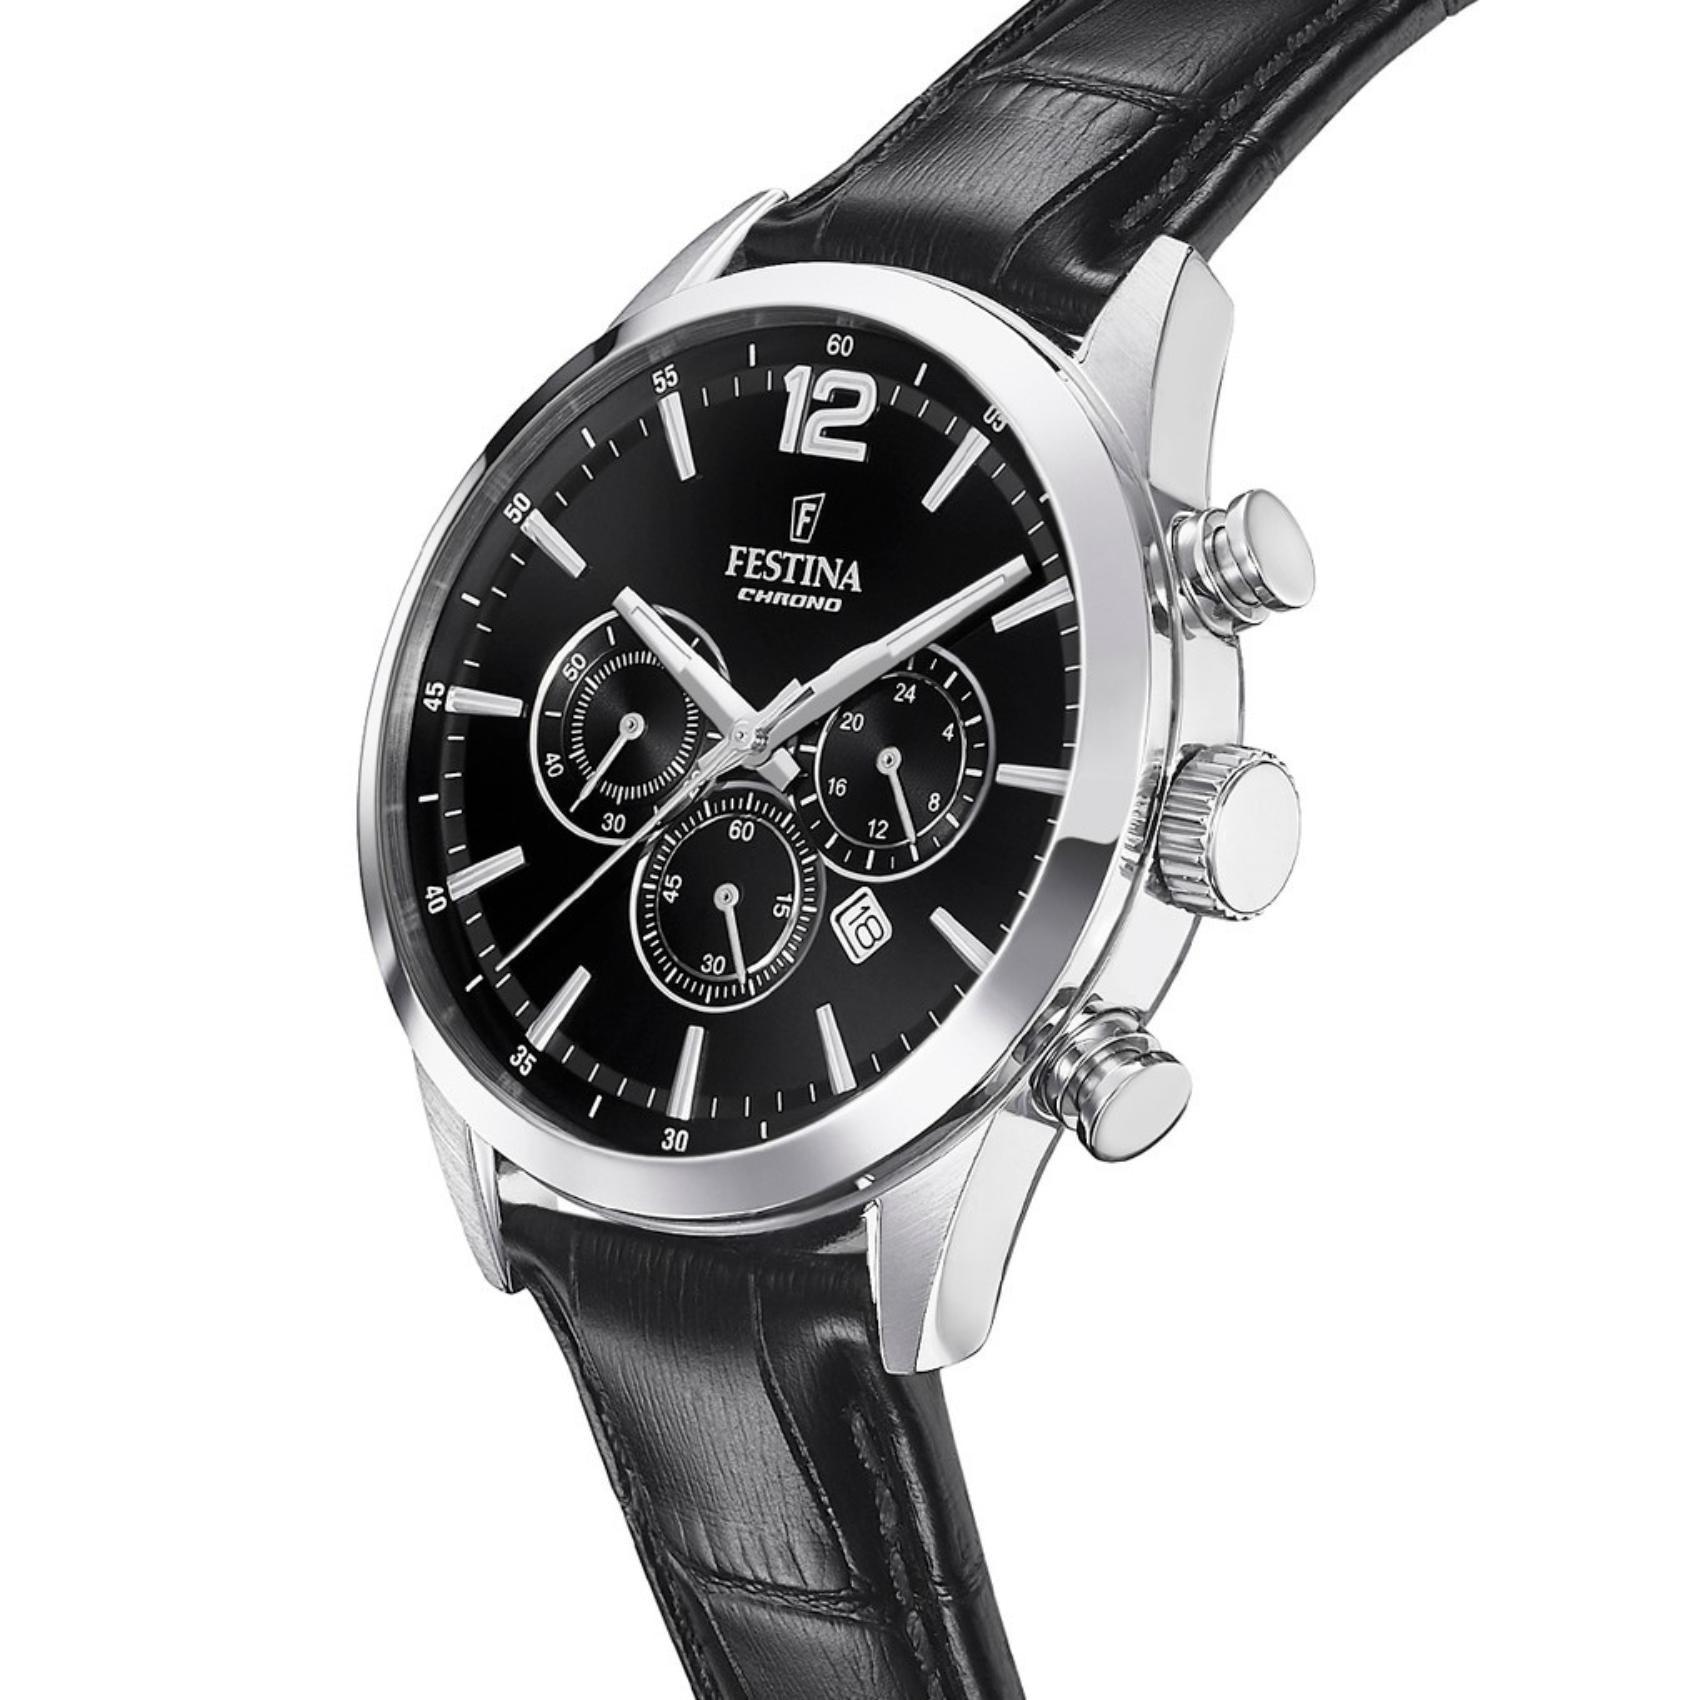 Αντρικό ρολόι Festina F20542/5 με μαύρο δερμάτινο λουράκι, μαύρο καντραν, μηχανισμό μπαταρίας quartz με ένδειξη ημερομηνίας και λειτουργία χρονογράφου, στρογγυλό στεφάνι με διάμετρο 43,5mm, αδιάβροχο στις 5ΑΤΜ-50Μ.